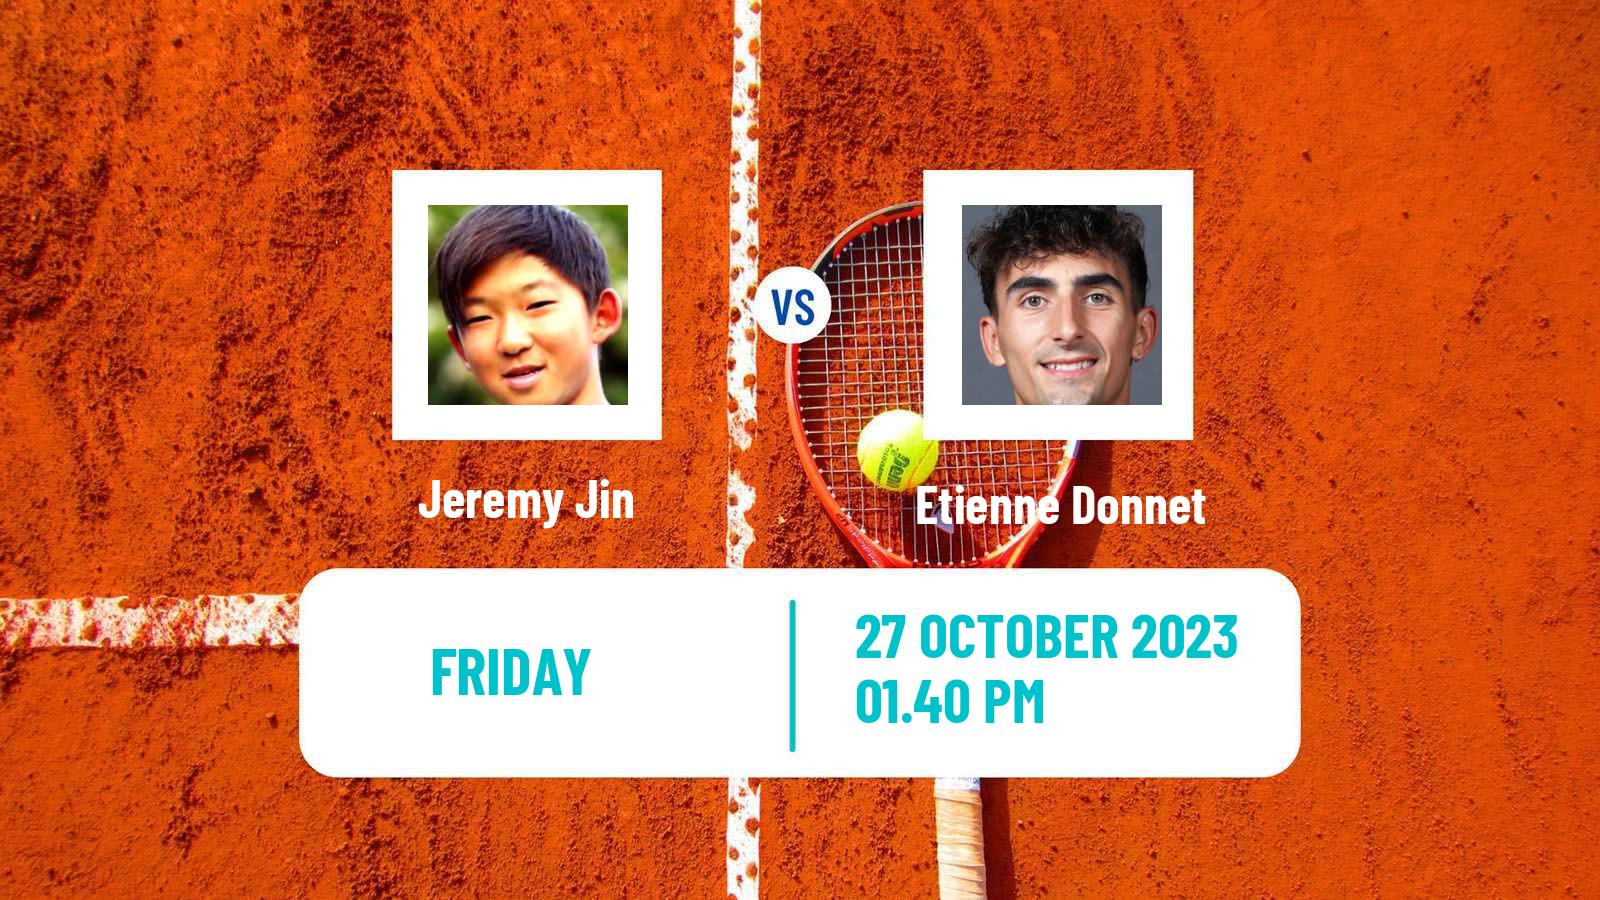 Tennis ITF M15 Tallahassee Fl Men Jeremy Jin - Etienne Donnet